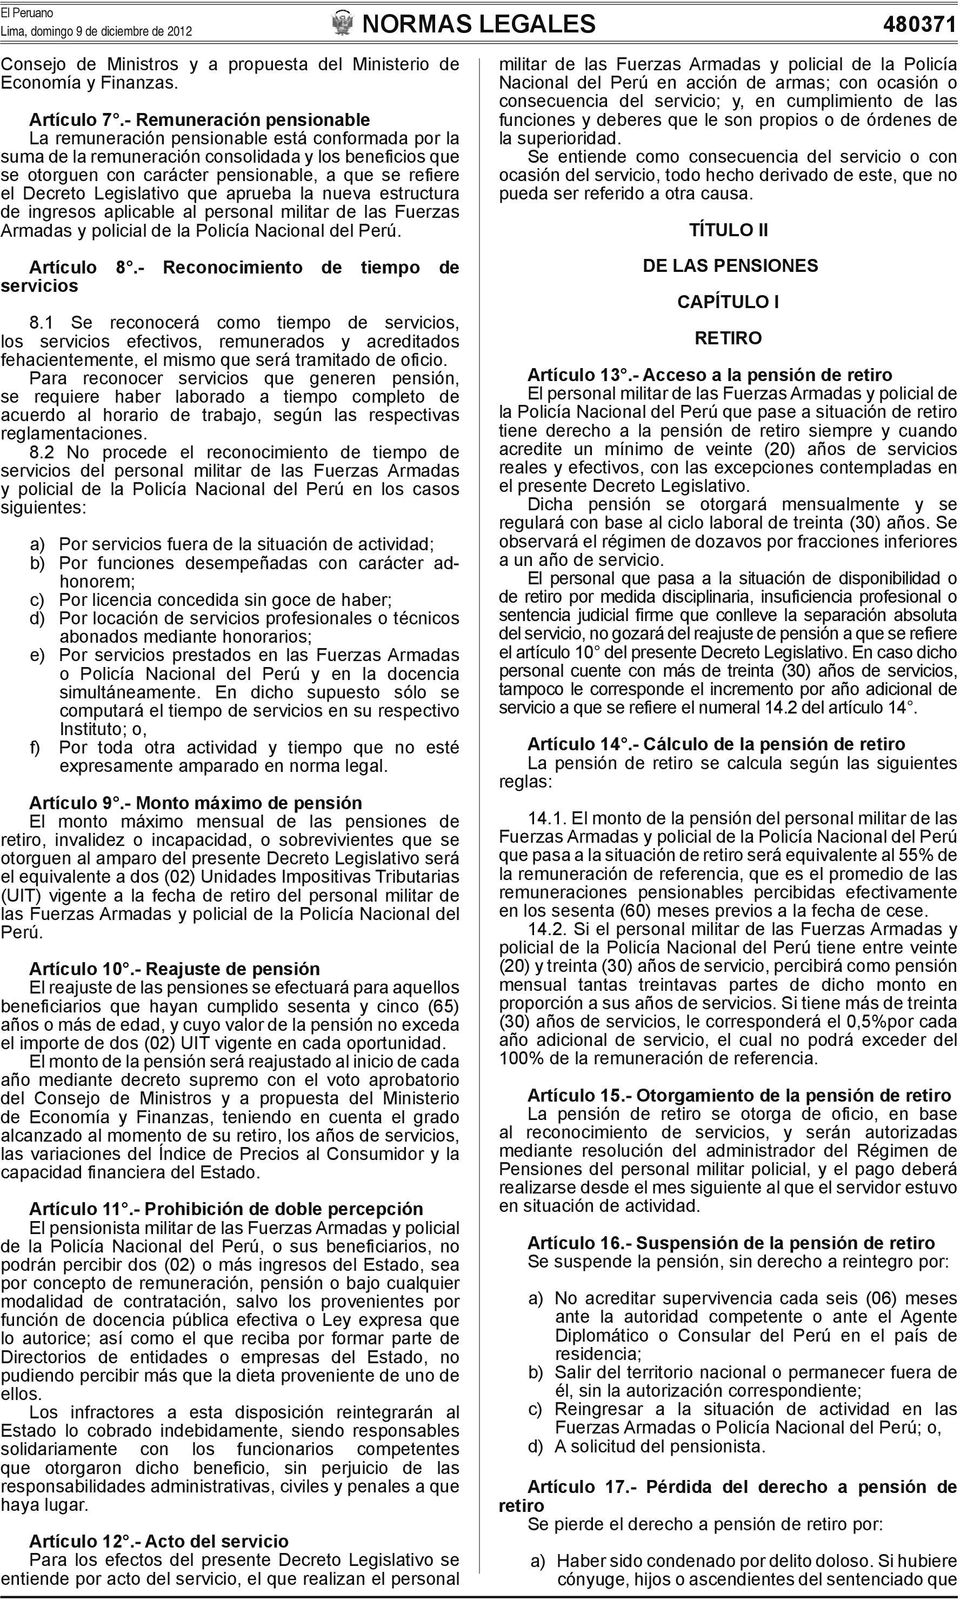 Decreto Legislativo que aprueba la nueva estructura de ingresos aplicable al personal militar de las Fuerzas Armadas y policial de la Policía Nacional del Perú. Artículo 8.